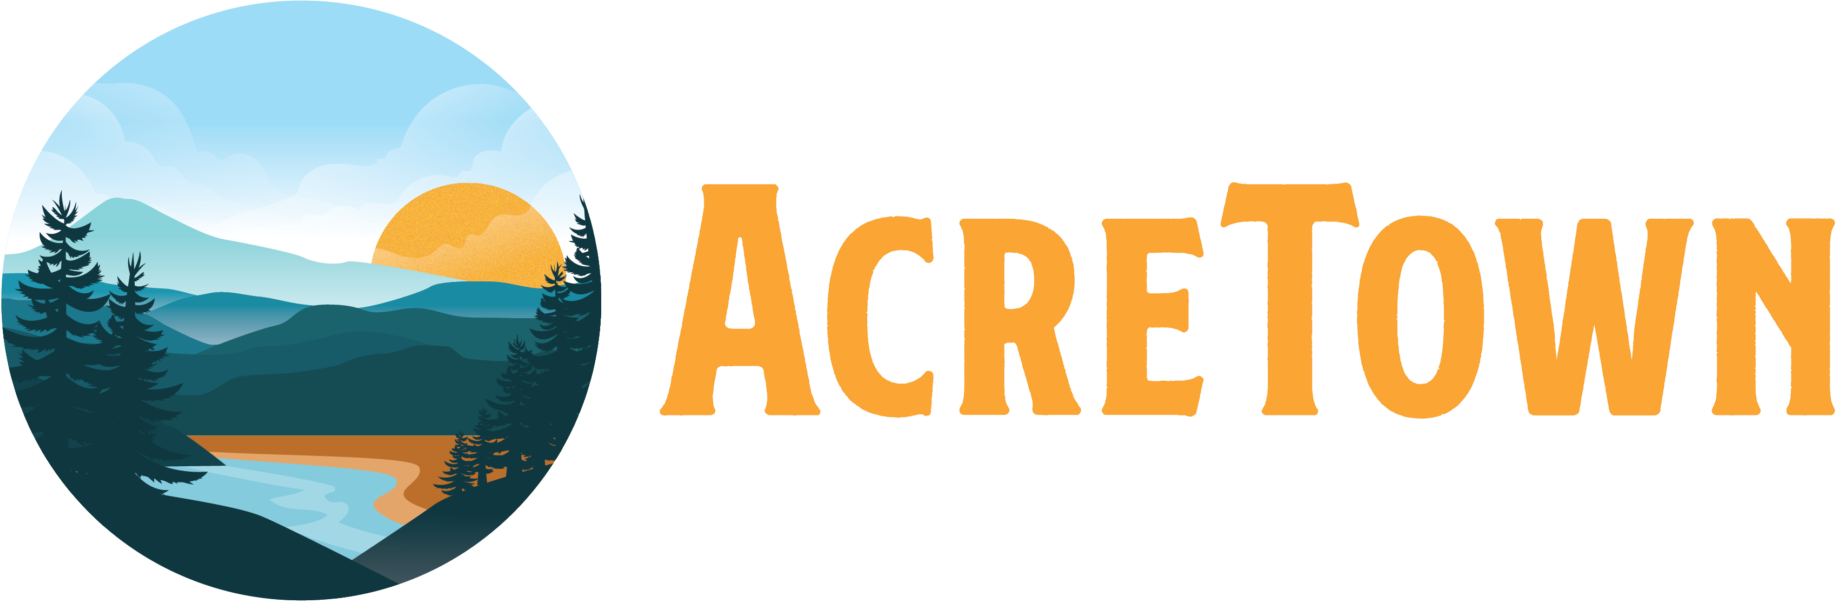 AcreTown.com  logo